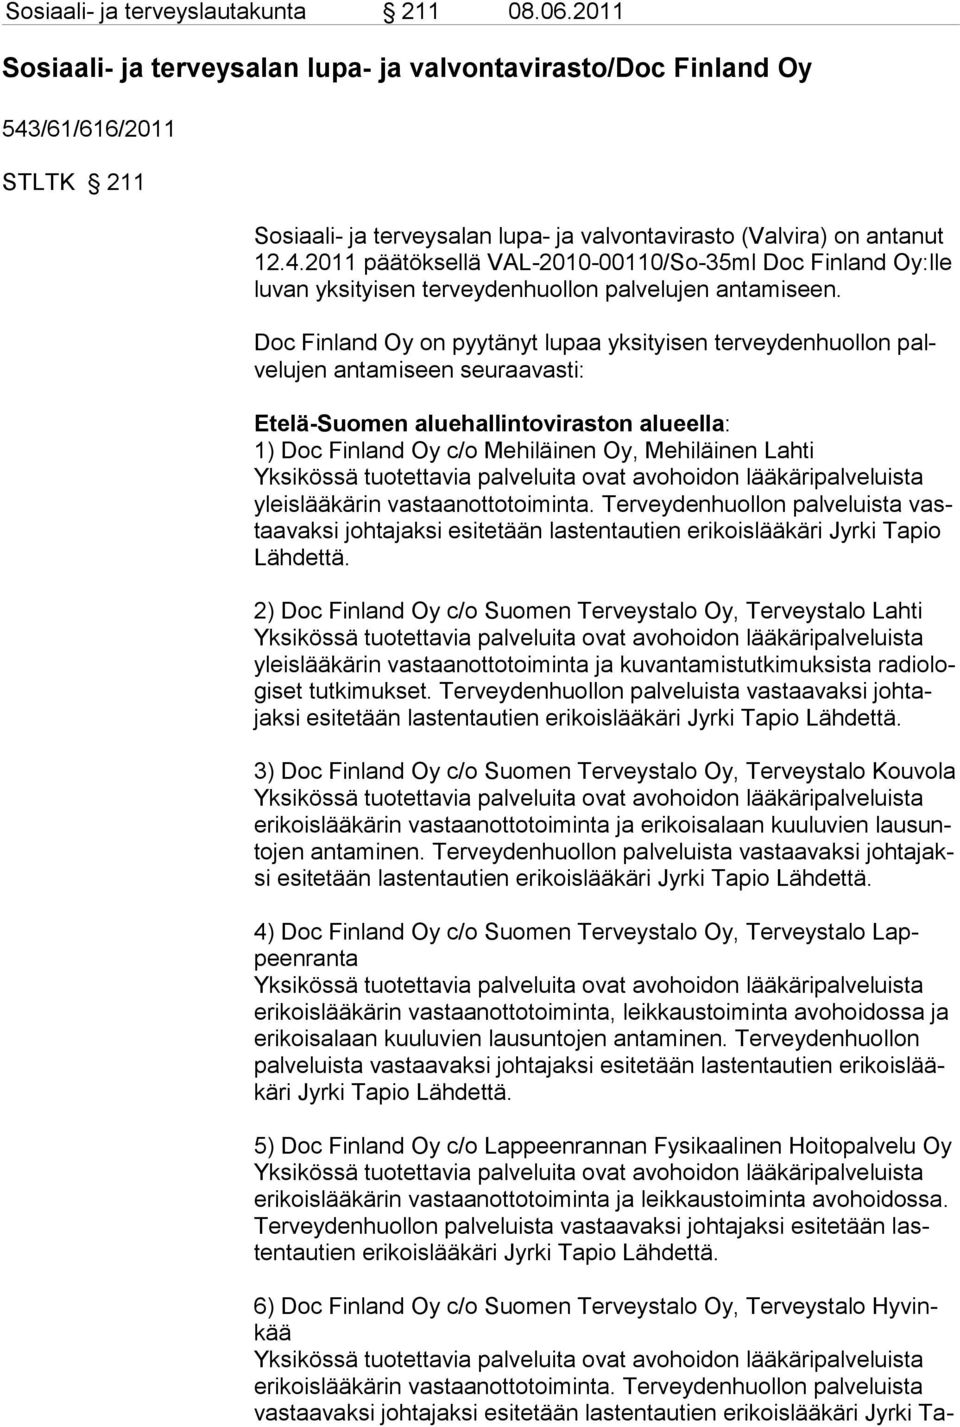 Doc Finland Oy on pyytänyt lupaa yksityisen terveydenhuollon palvelujen antamiseen seuraavasti: Etelä-Suomen aluehallintoviraston alueella: 1) Doc Finland Oy c/o Mehiläinen Oy, Mehiläinen Lahti